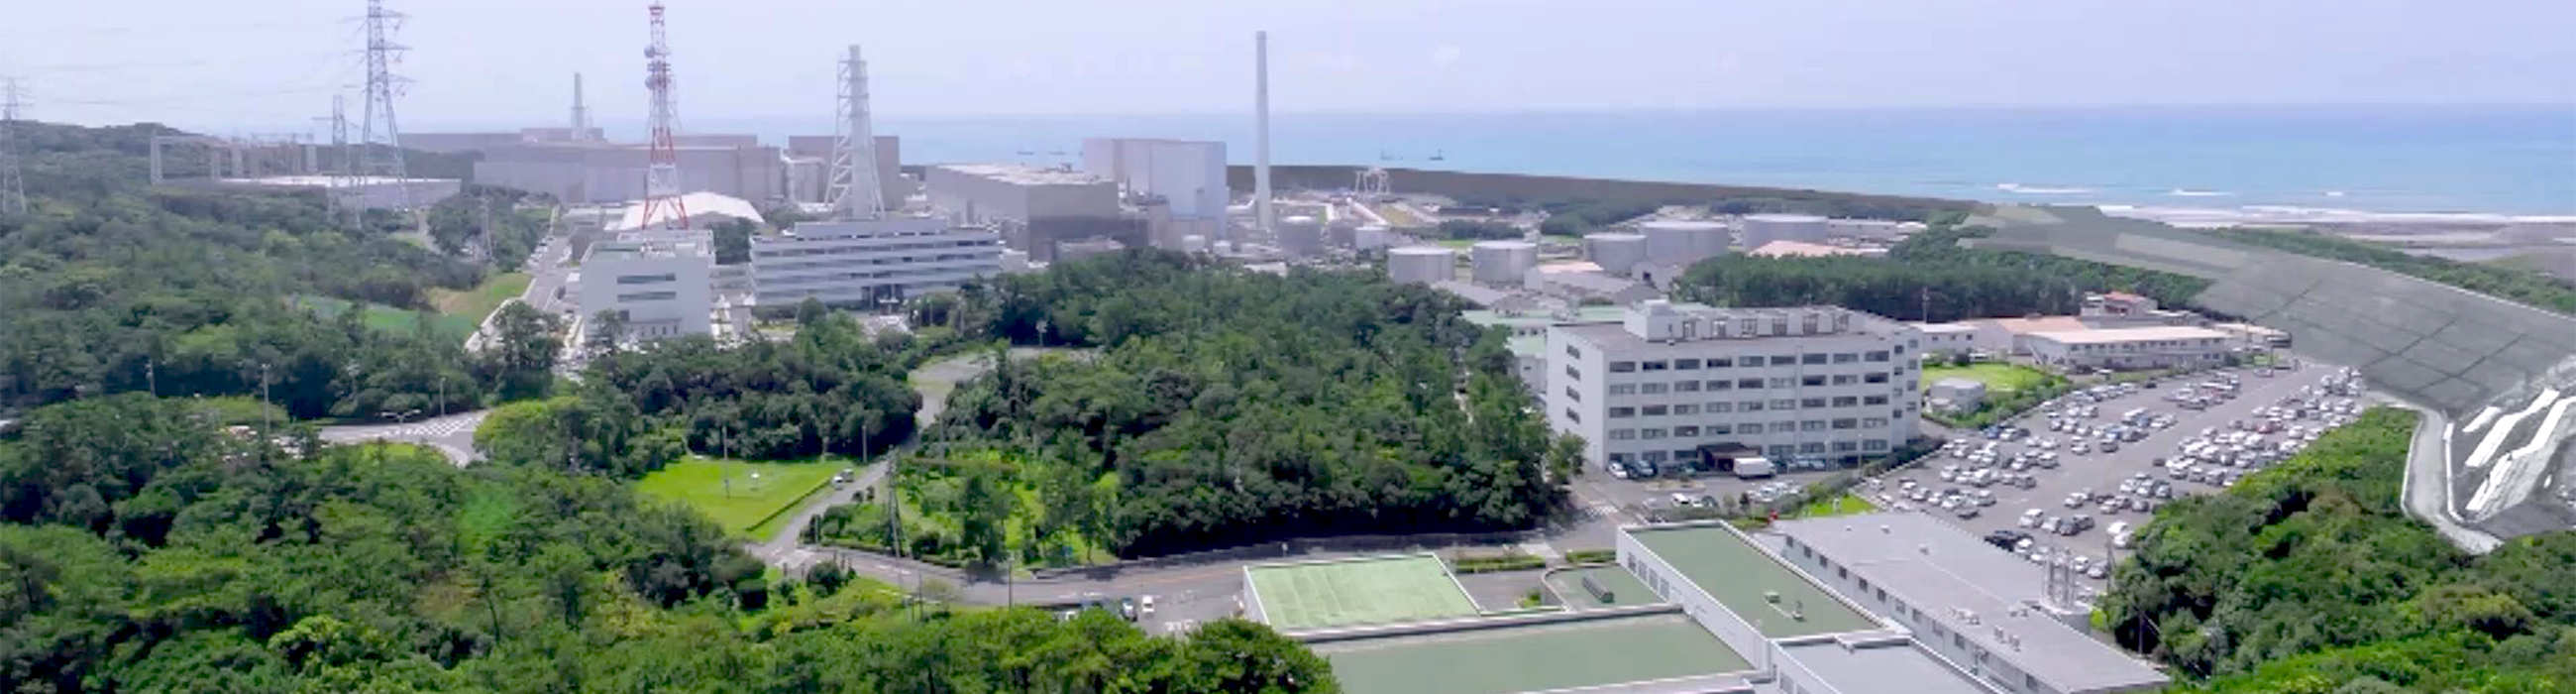 ニントゥアン第二原子力発電所